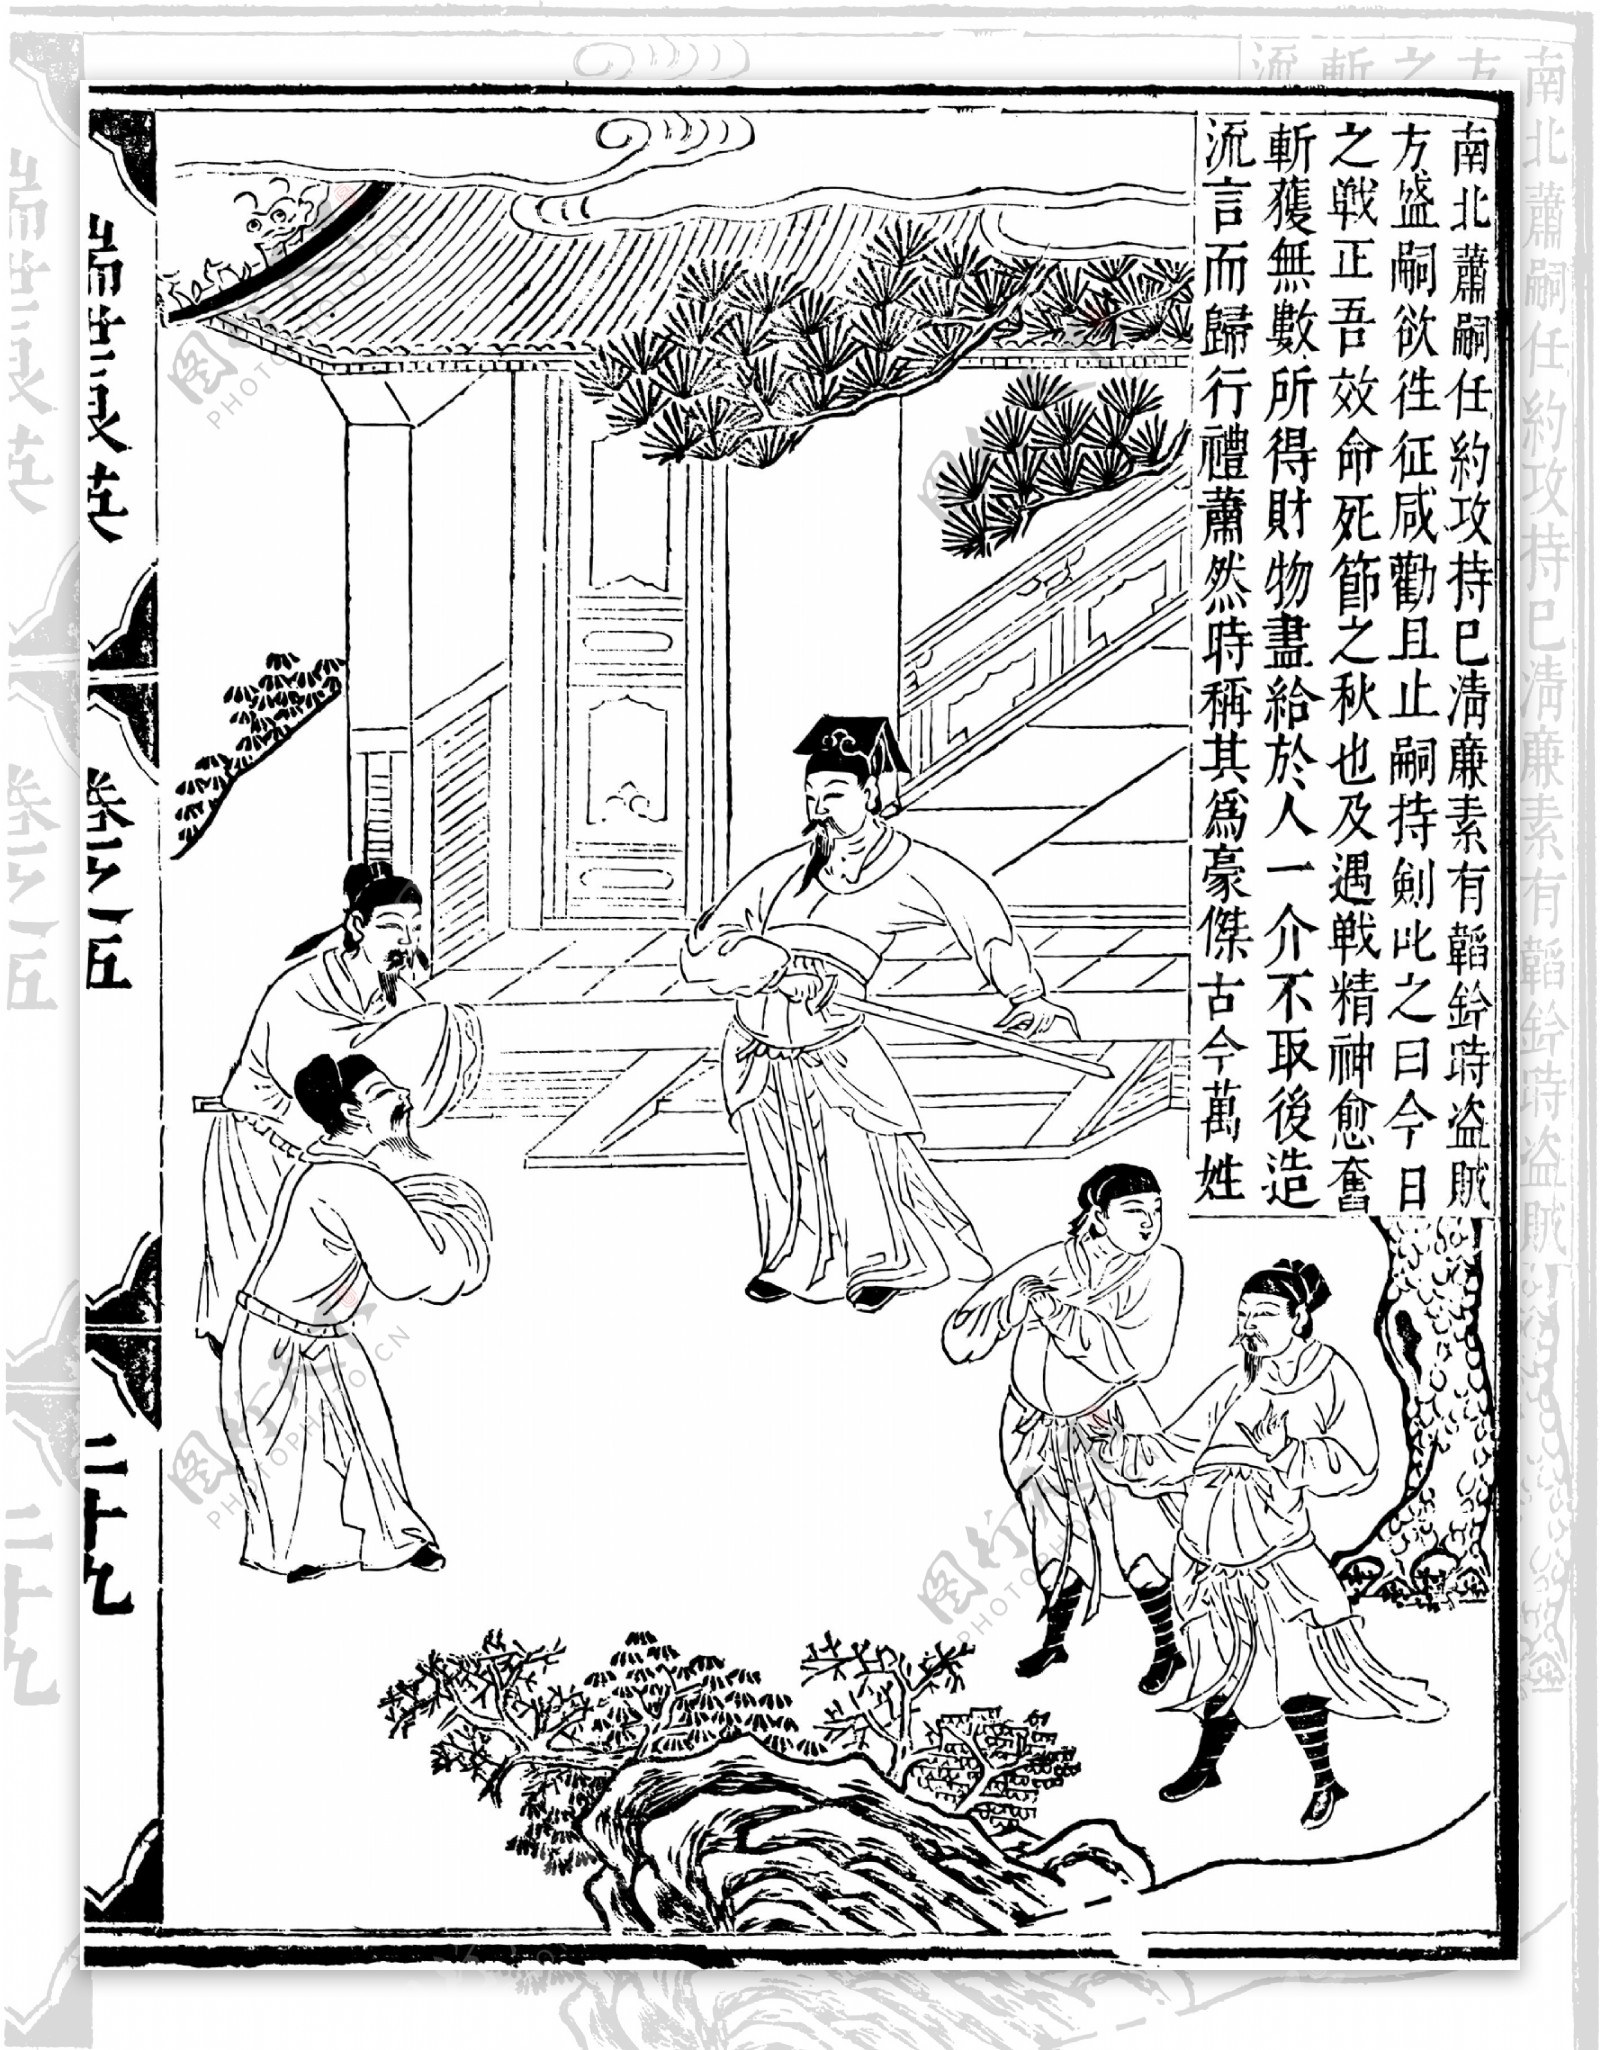 瑞世良英木刻版画中国传统文化72